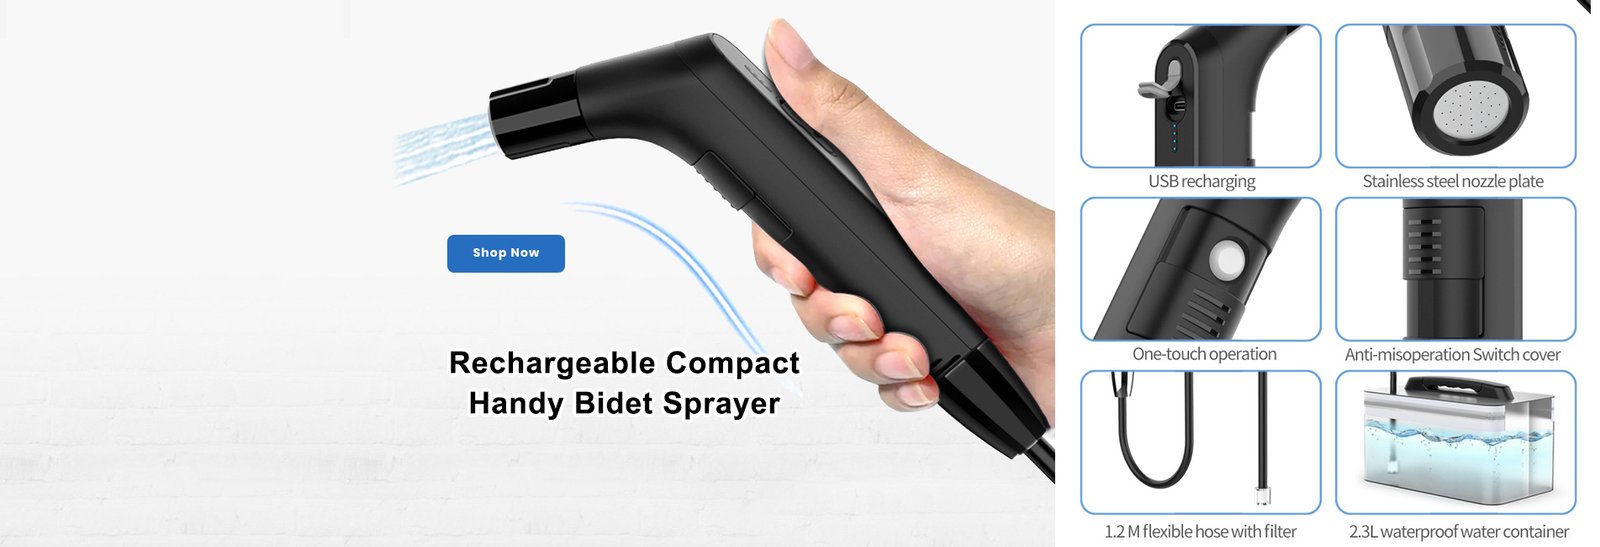 Compact Handy Bidet Sprayer - TIG-BID-01-BK